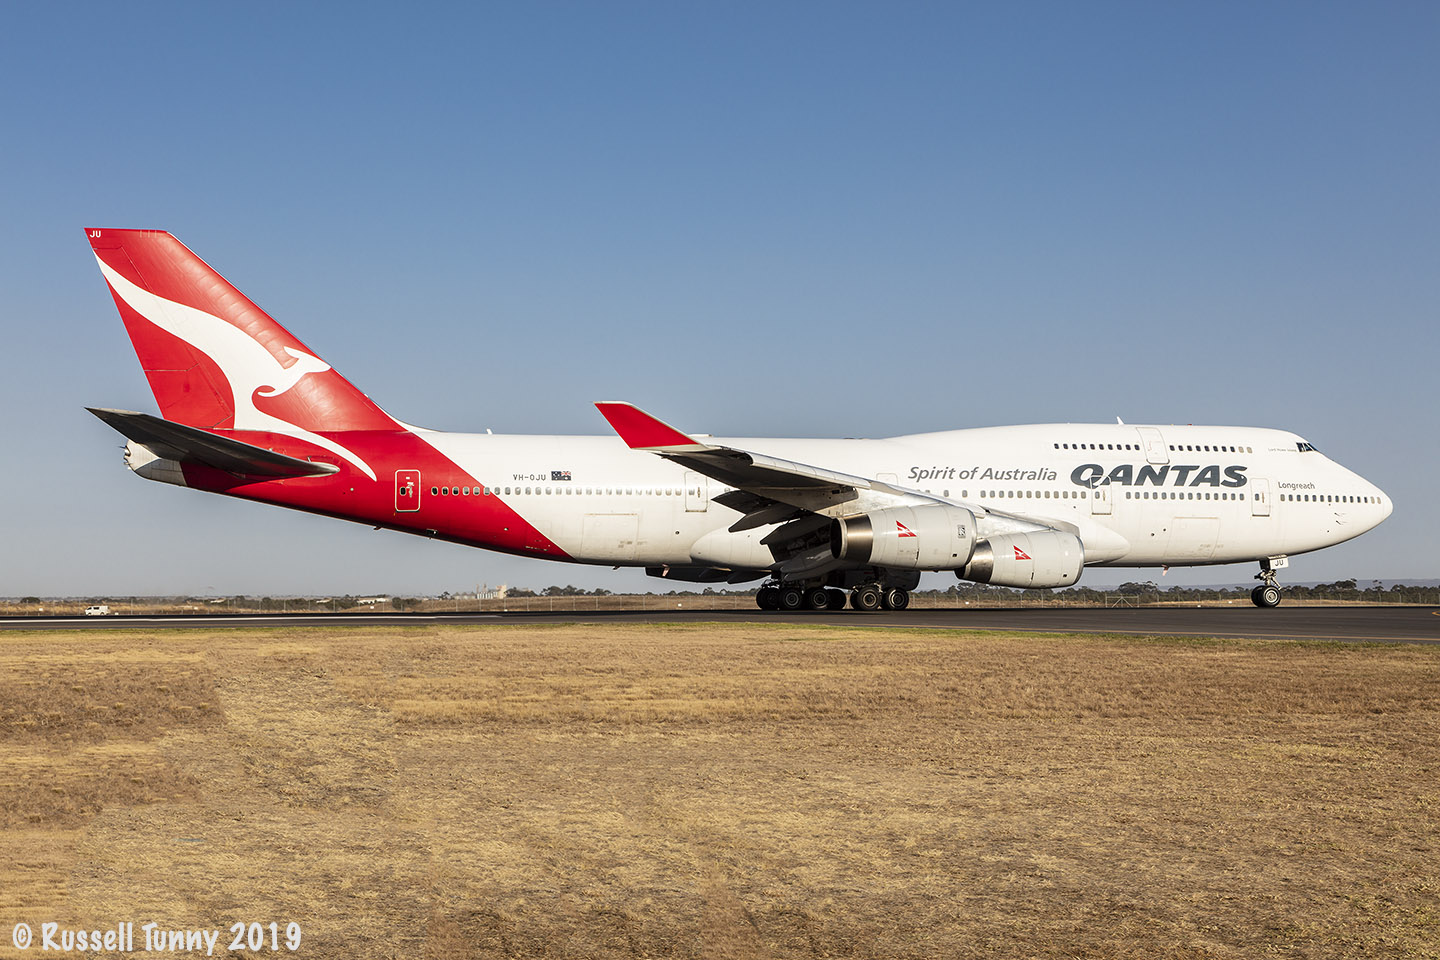 Boeing 747 VH-OJU Last Flight